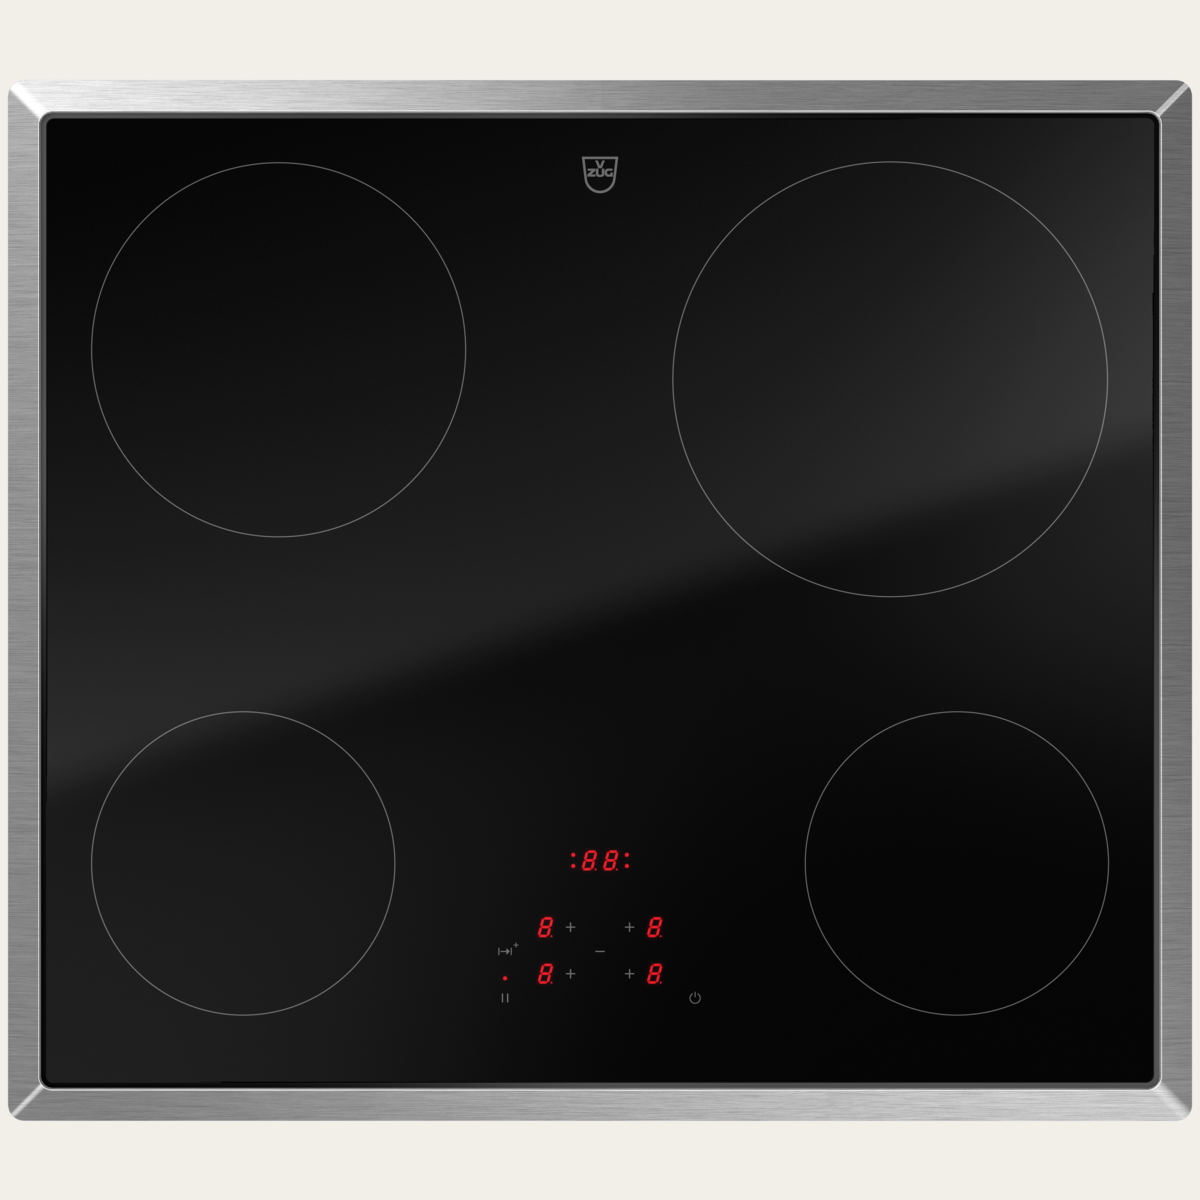 V-ZUG Hob CookTop V2000 A604, radiant heating element, Standard width: 60 cm, BlackDesign, Chrome frame, TouchControl, Cooking zones: 4